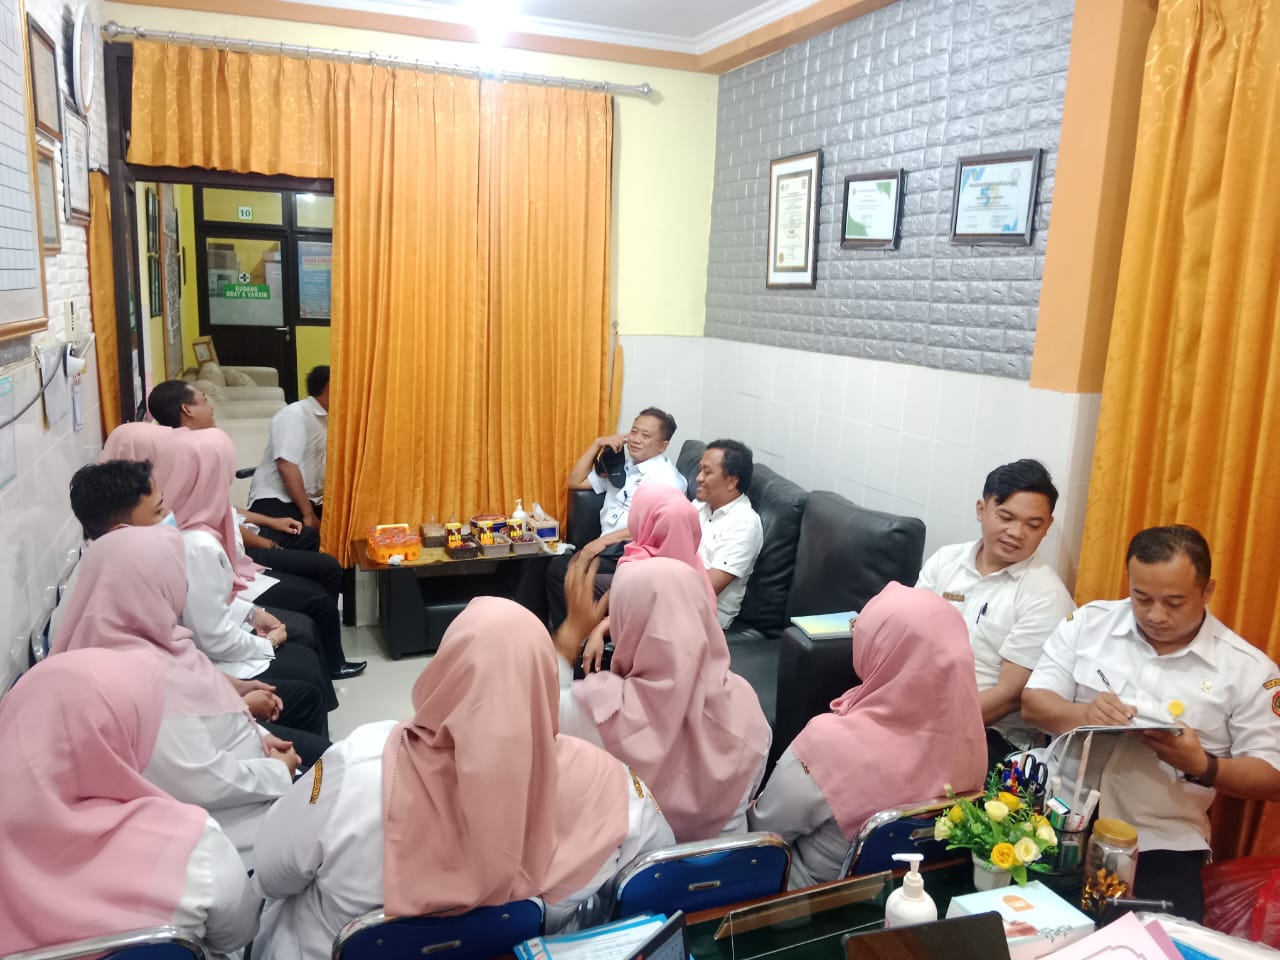 Kunjungan dan Pengarahan dari Dinas Kesehatan Bidang SDK di UPTD Puskesmas Pandan